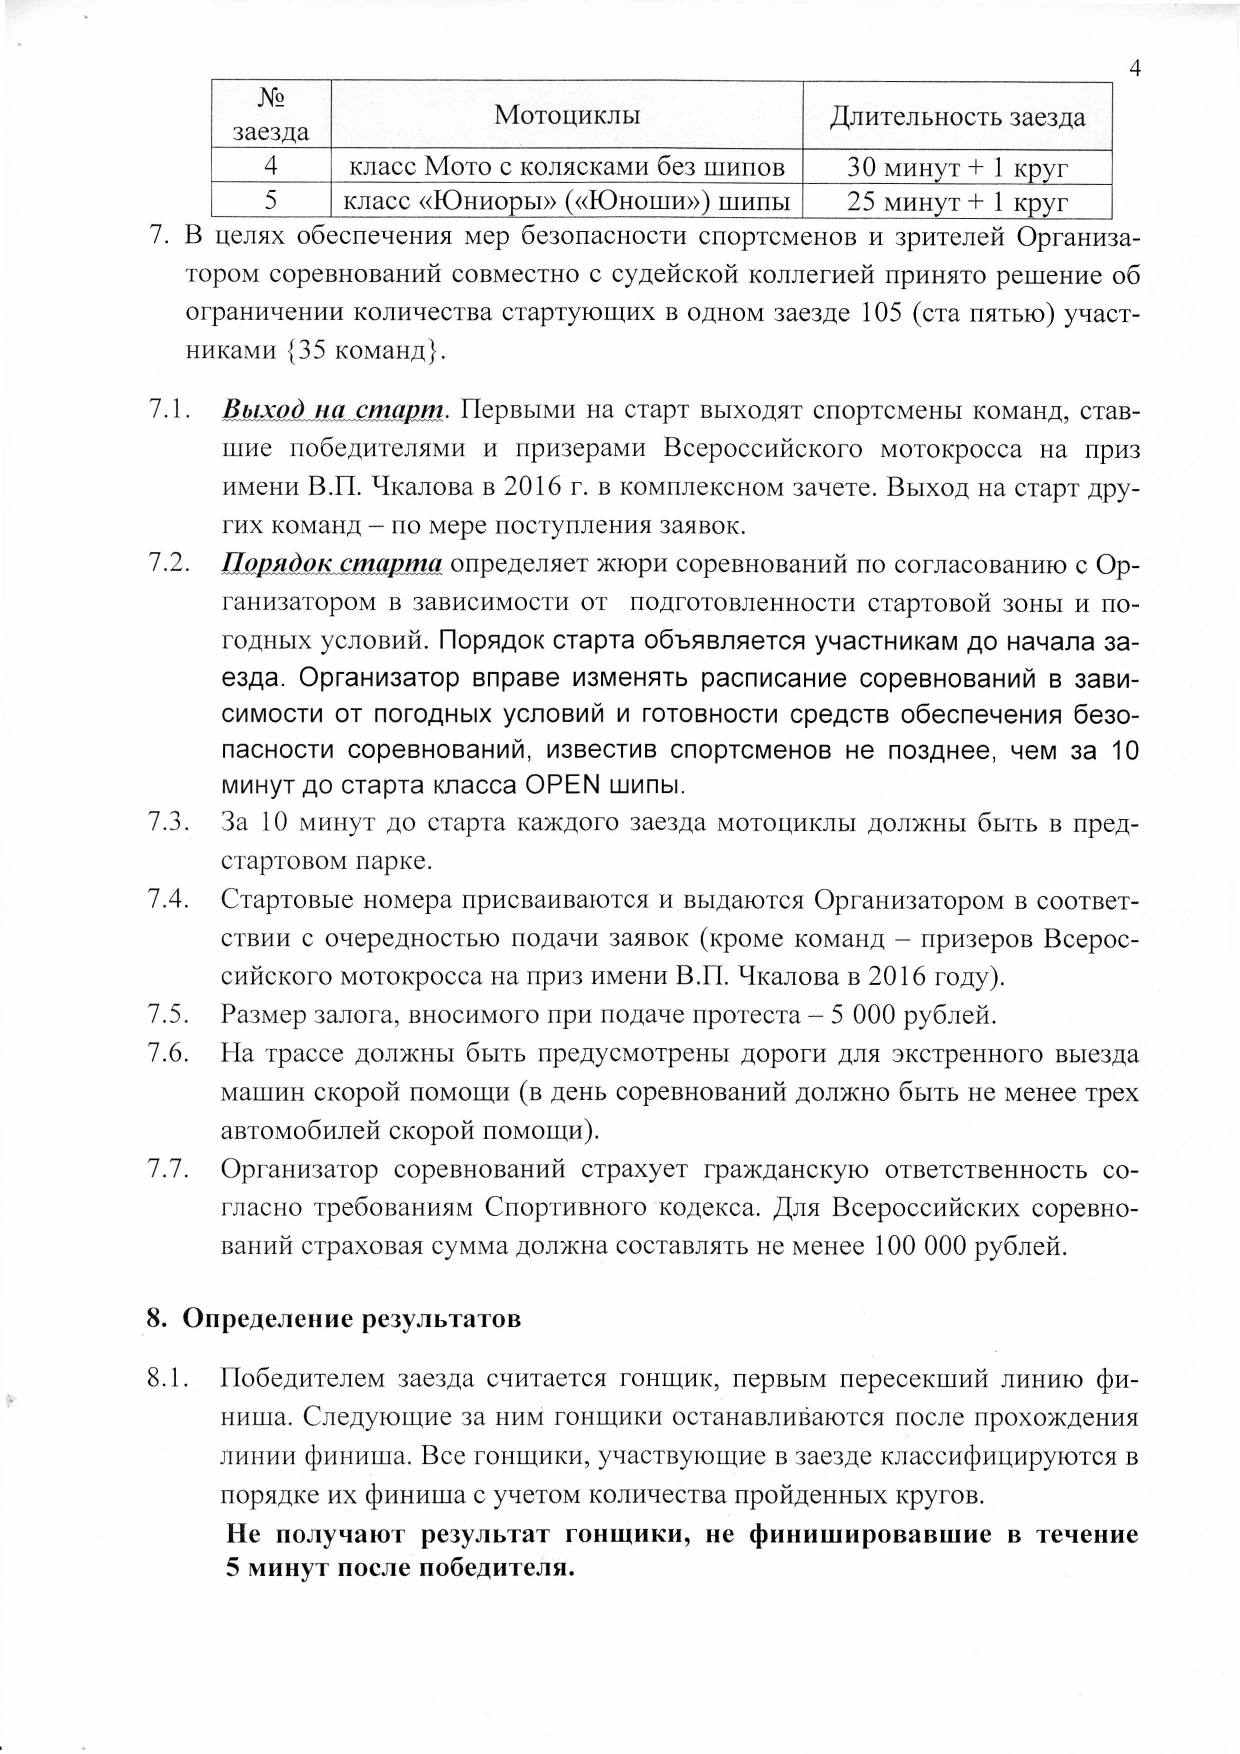 Чкаловский мотокросс 2017  регламент